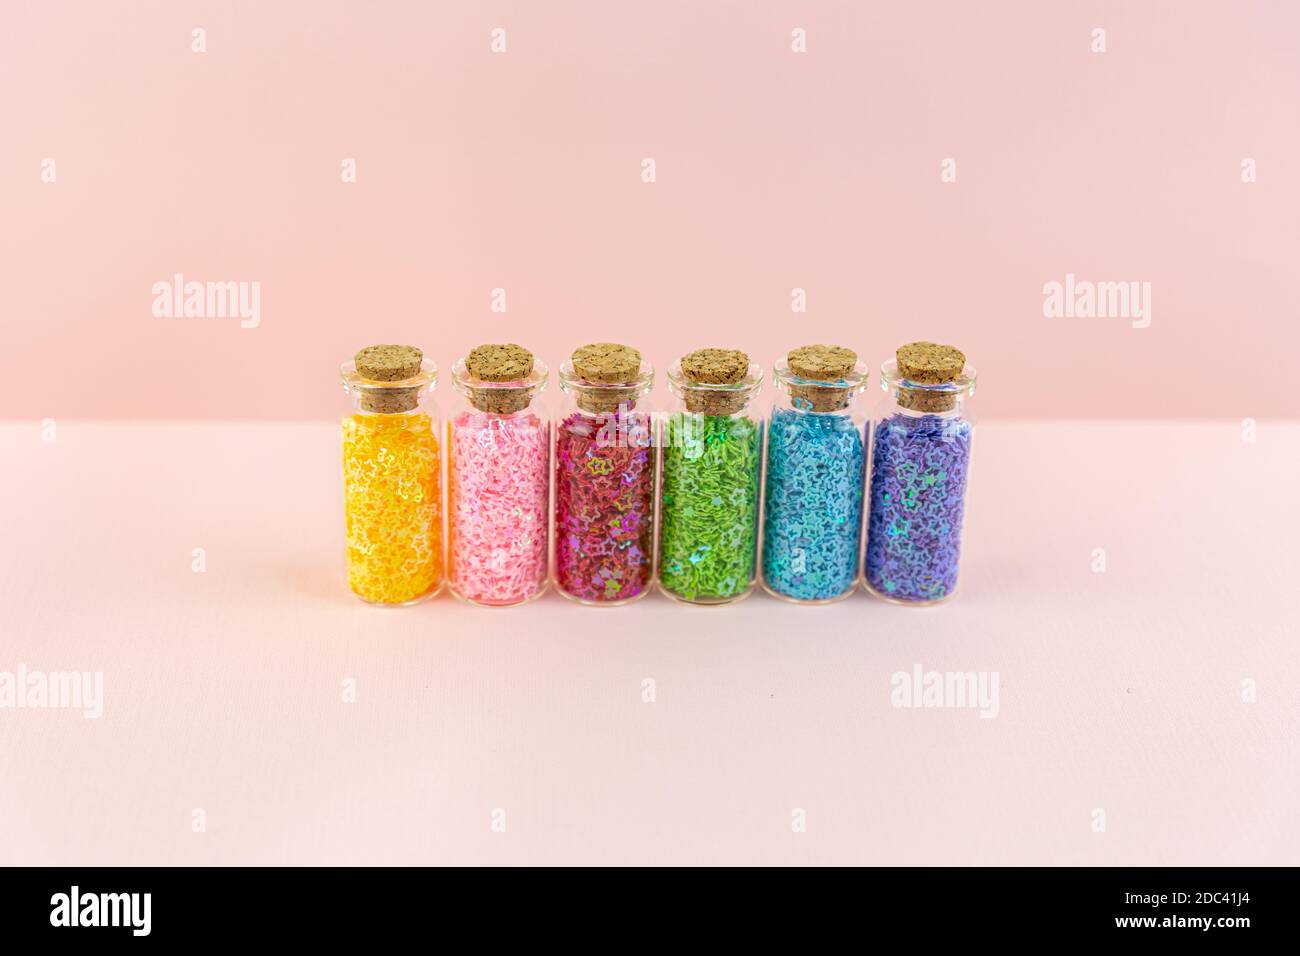 Piccole bottiglie o vasetti di vetro con tappi sigillati con stelle lucide multicolore si trovano in fila su sfondo rosa. Decorazioni in paillettes per la creatività. Foto Stock